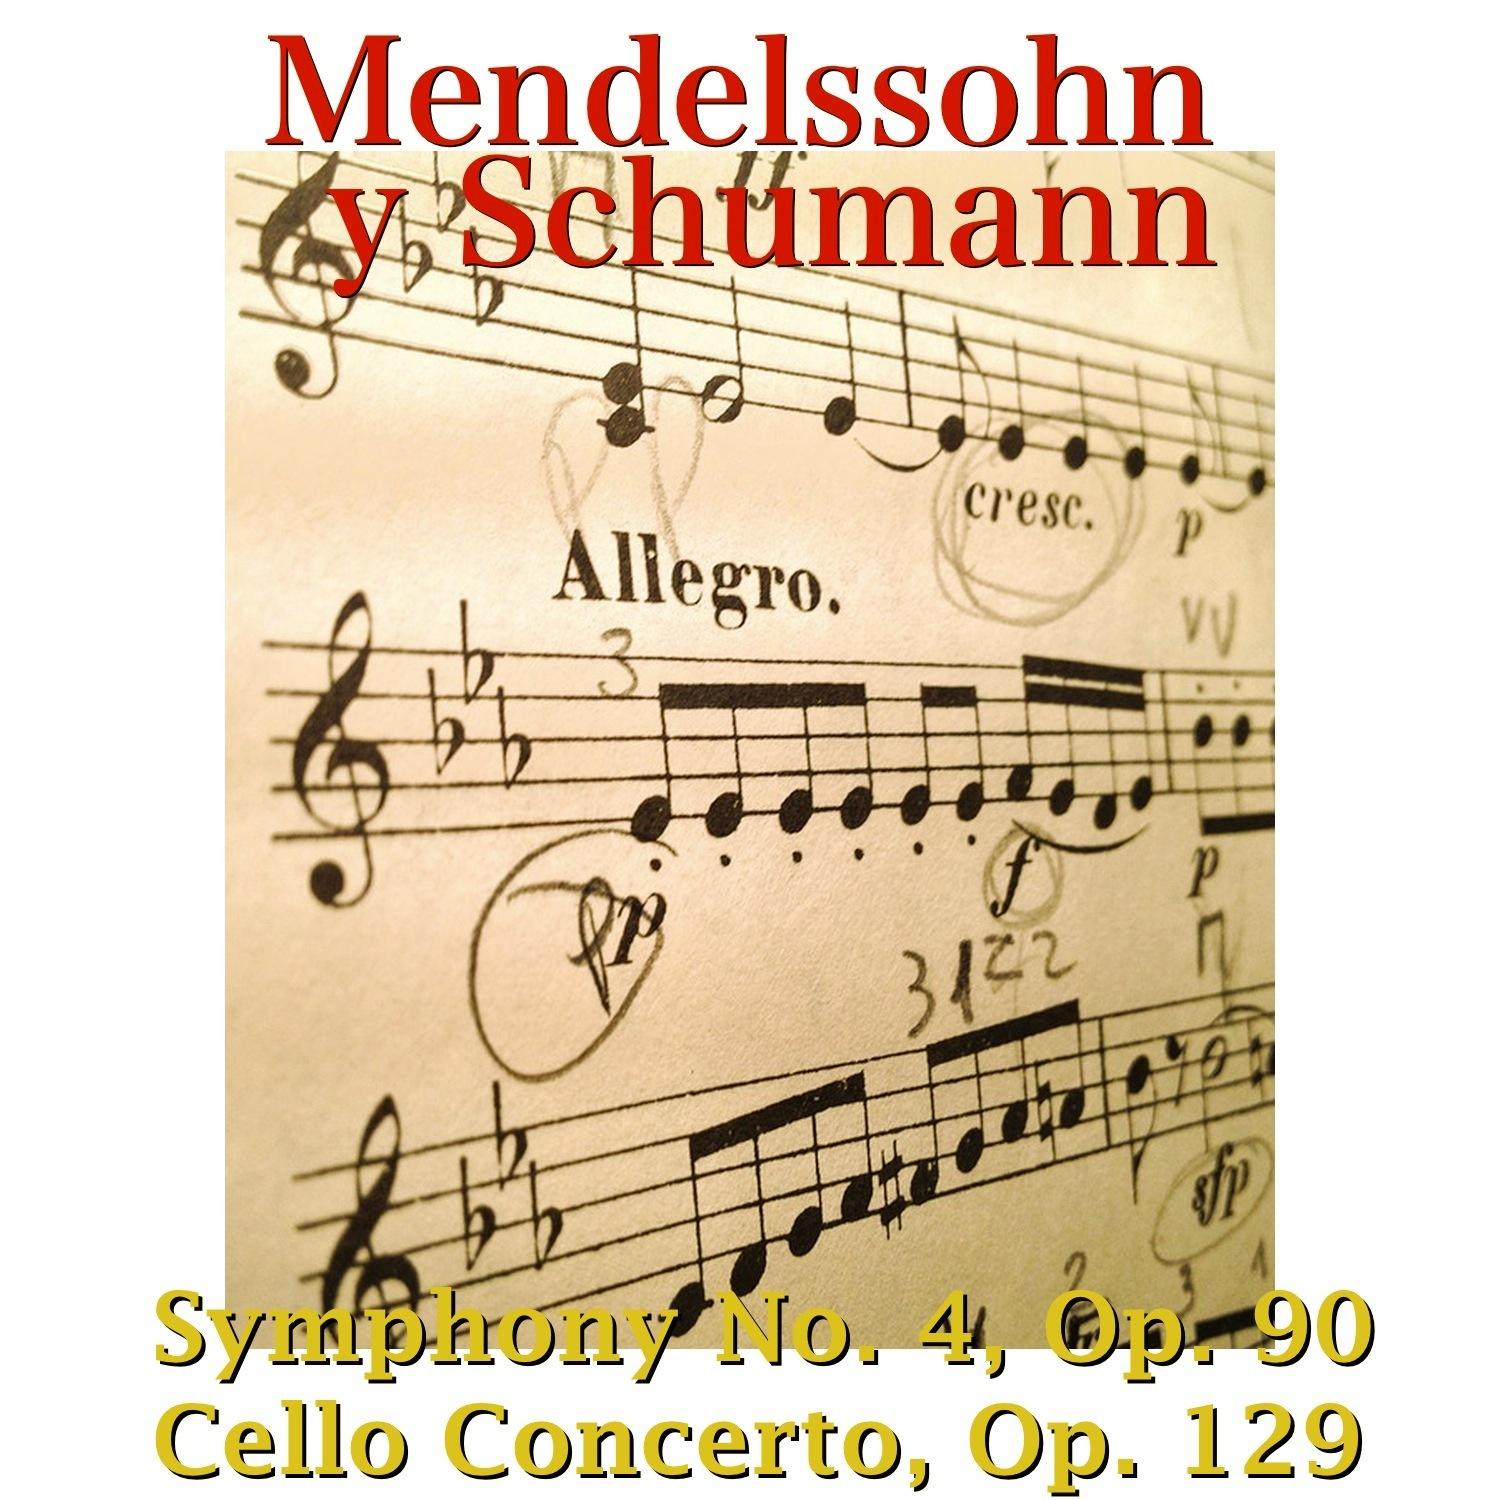 Cello Concerto, Op. 129: II. Langsam